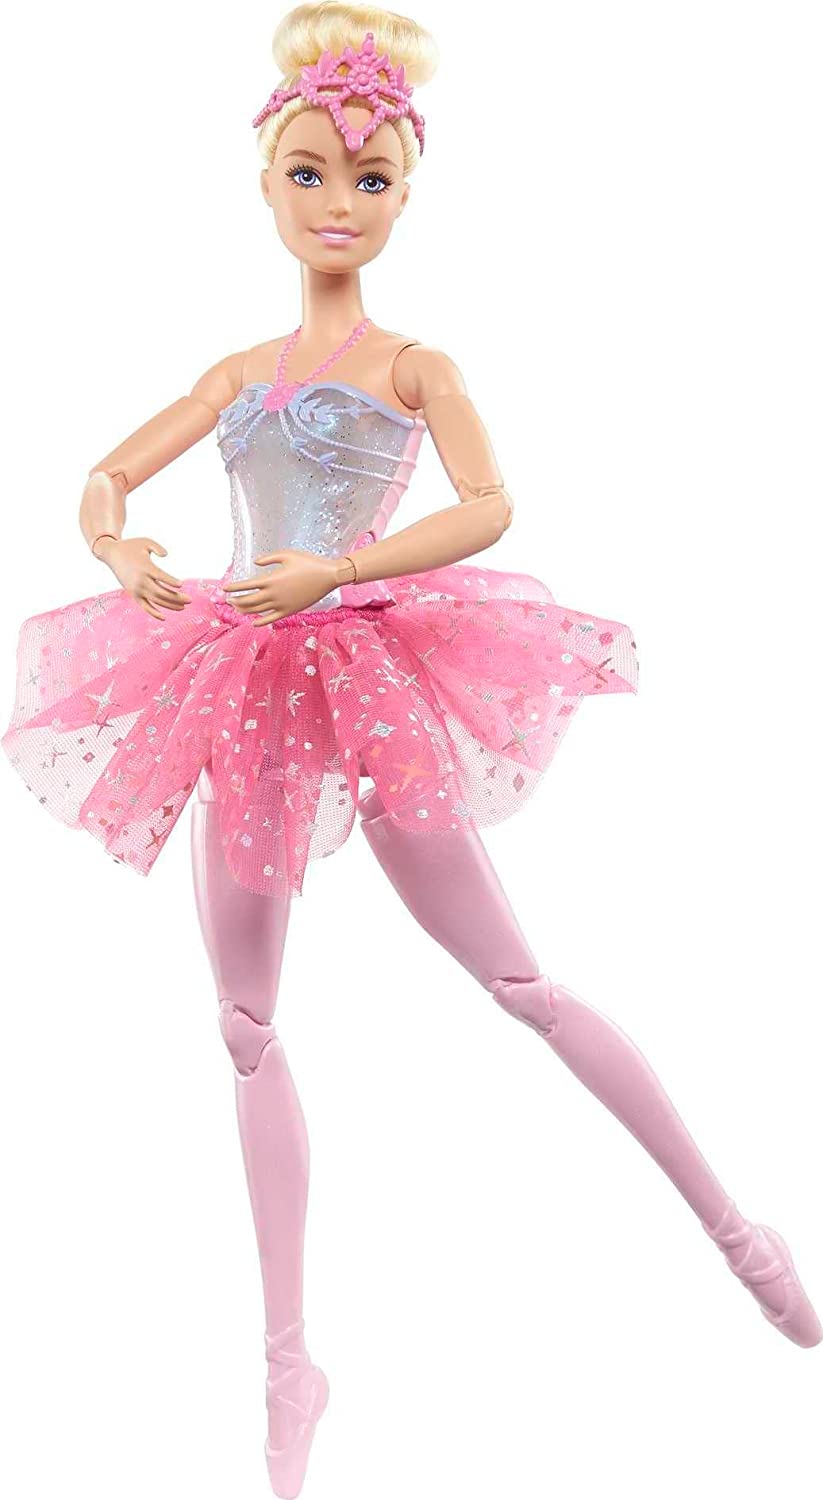 Barbie Twinkle Lights Ballerina Dolls | vlr.eng.br